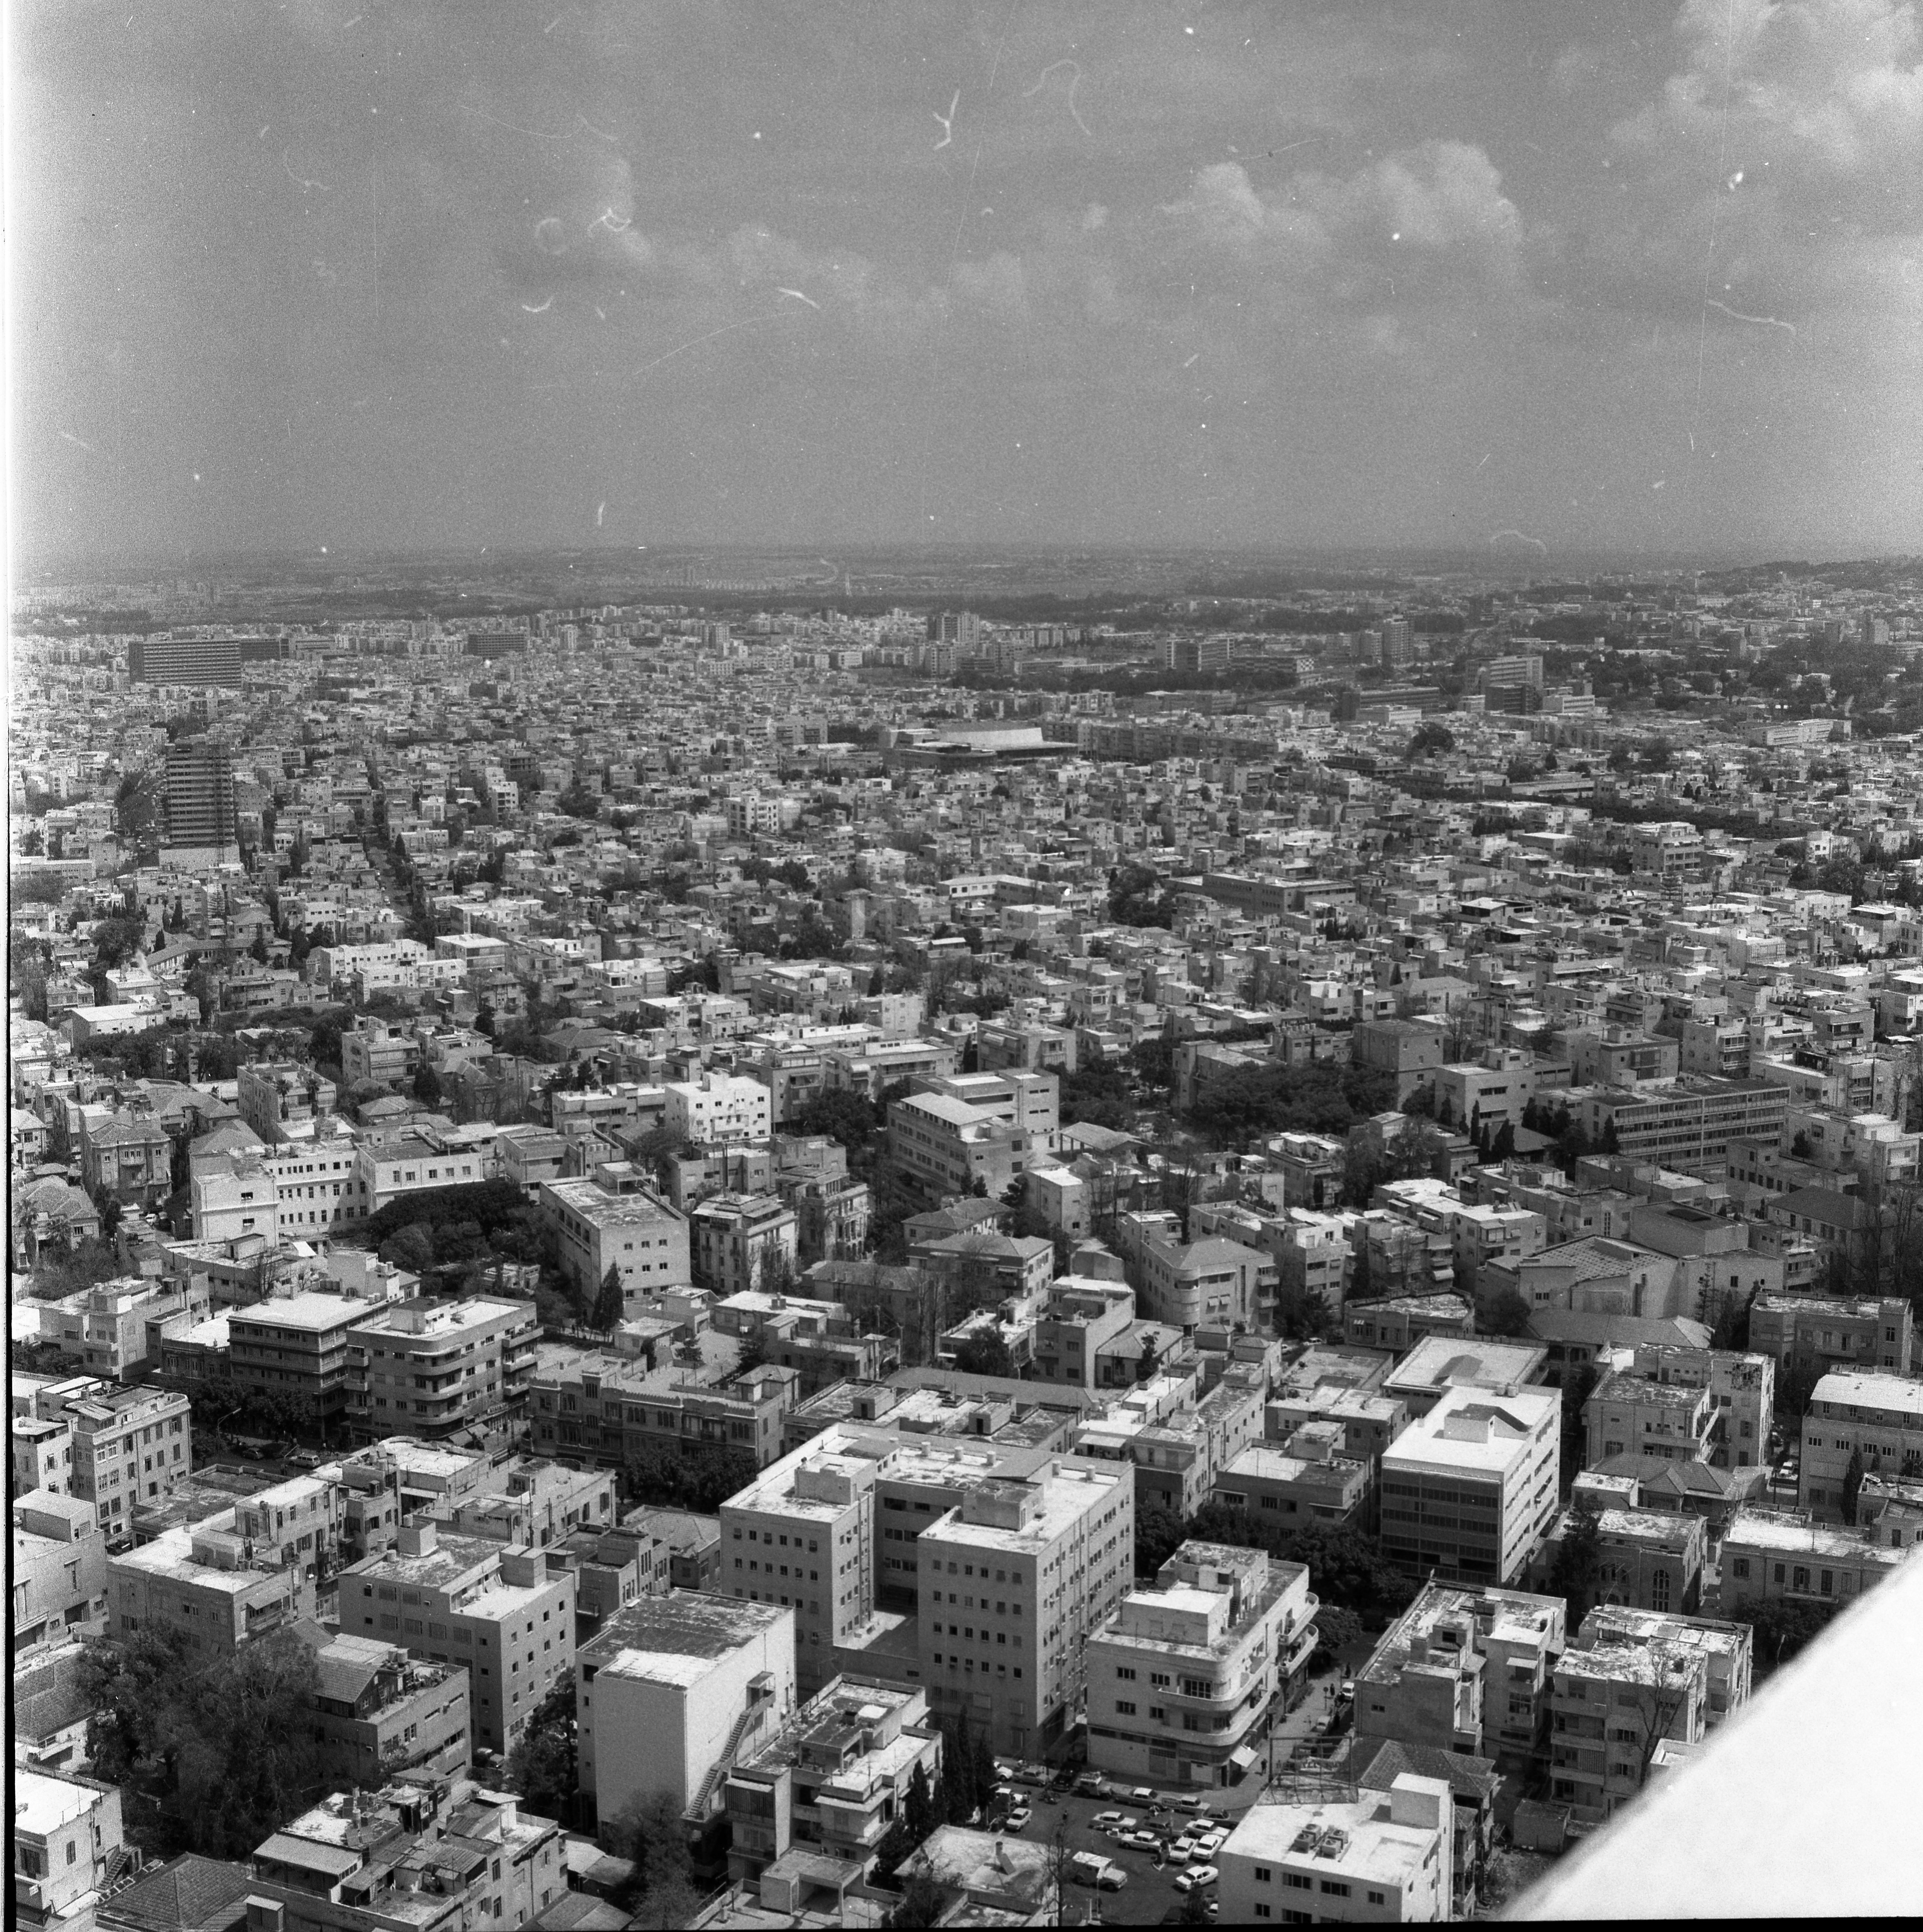  תל- אביב (ממגדל שלום)